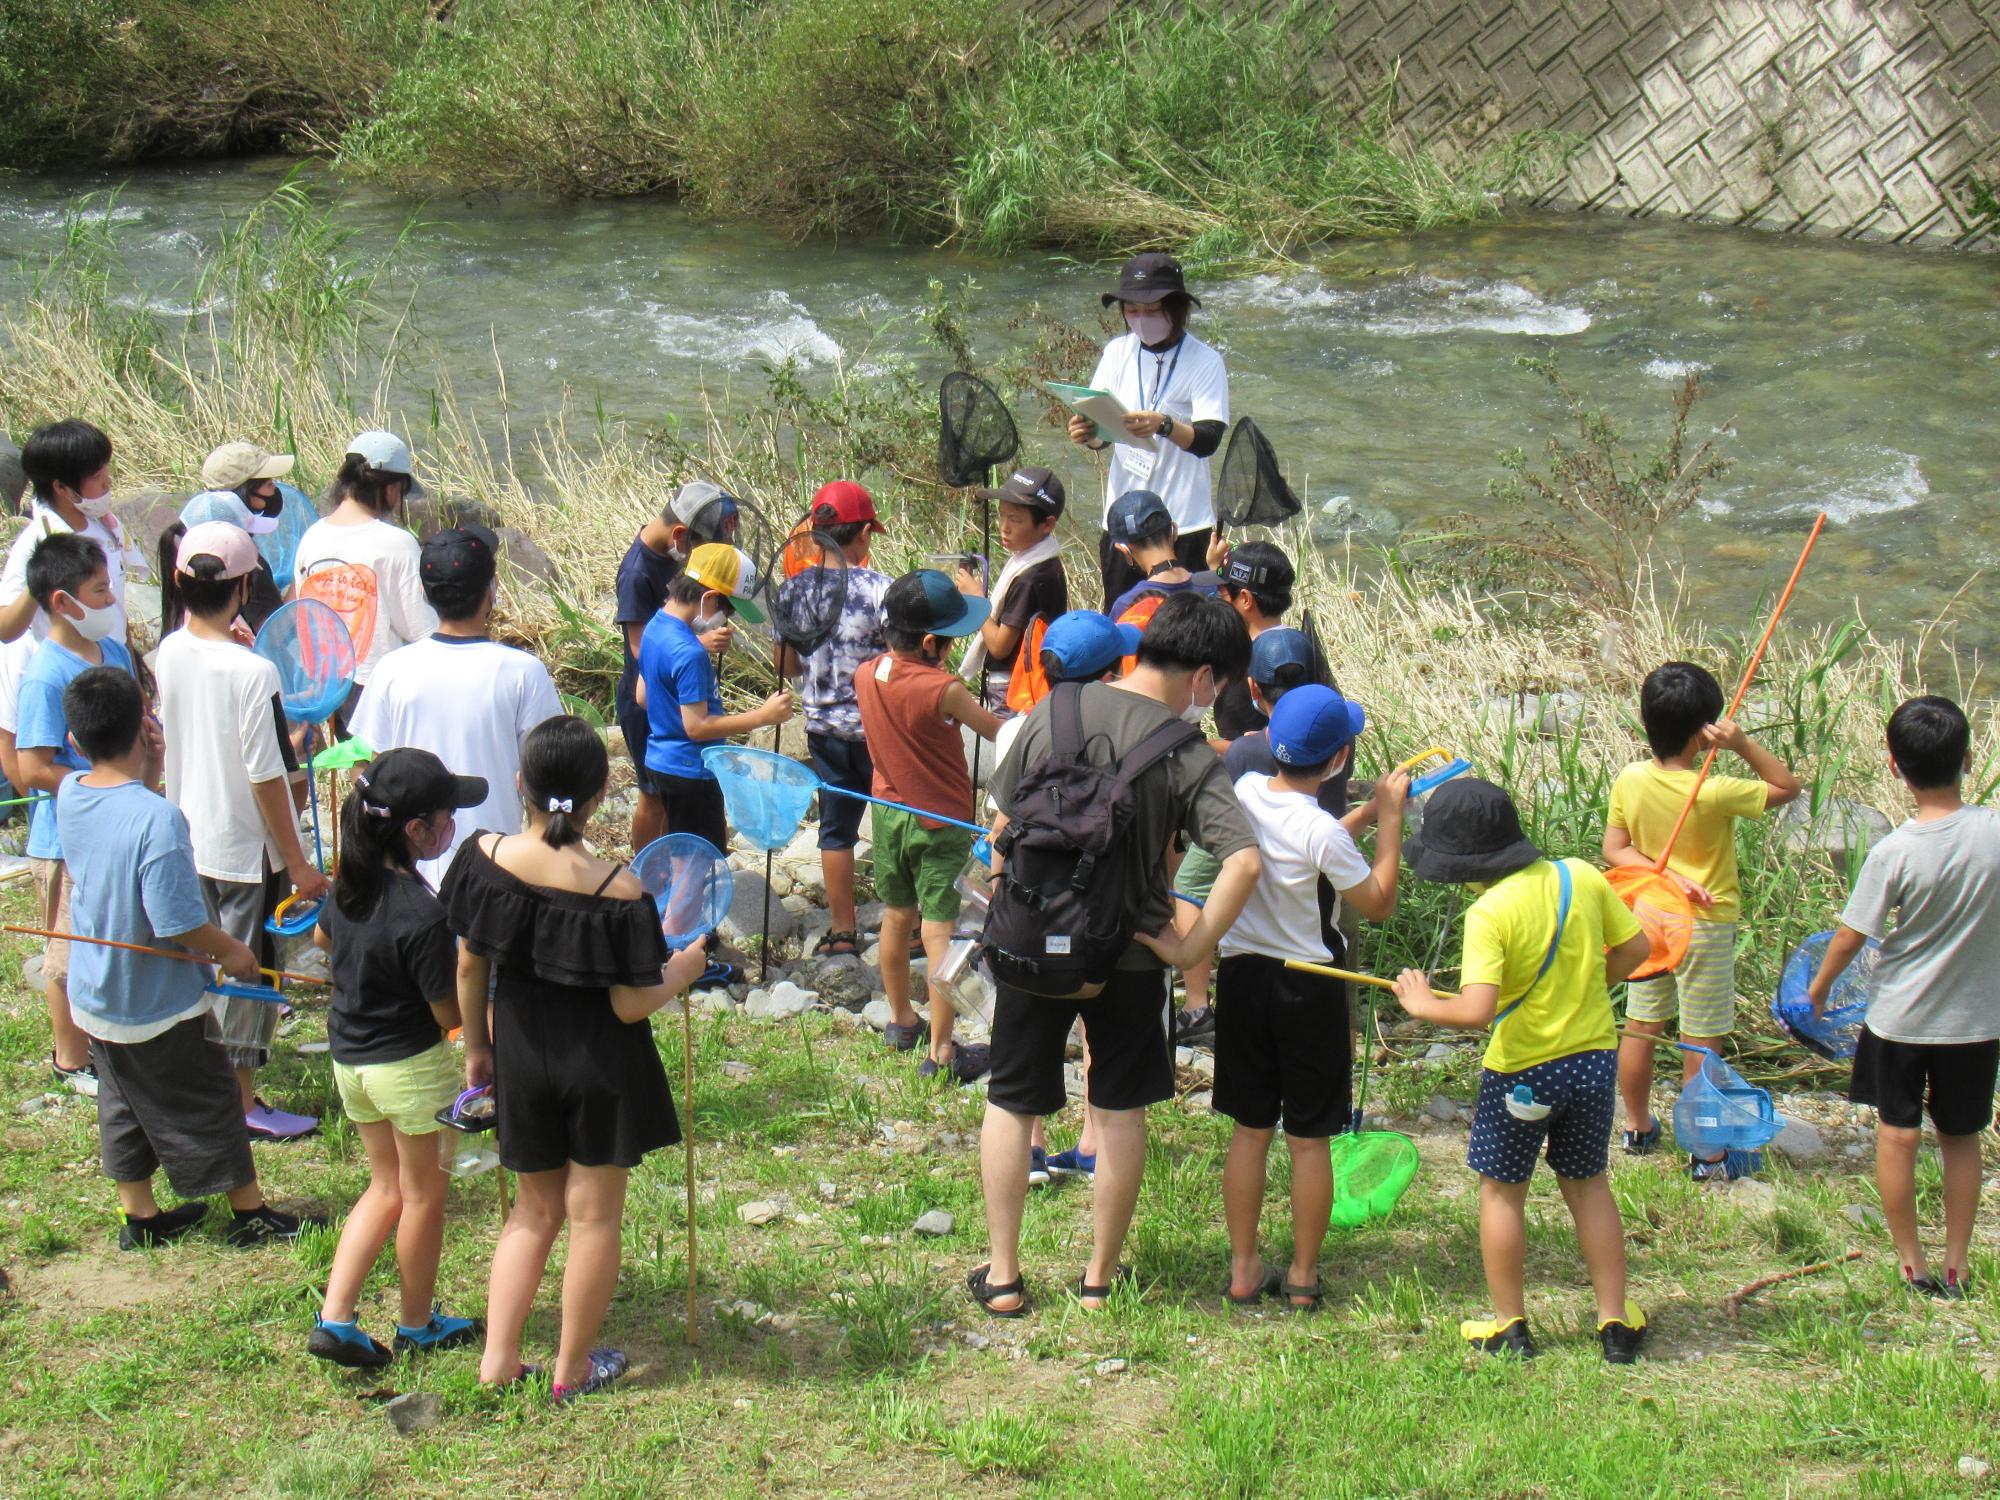 伊沢川探検で伊沢川に入る前にサポーターから注意事項を聞く子どもたちの写真